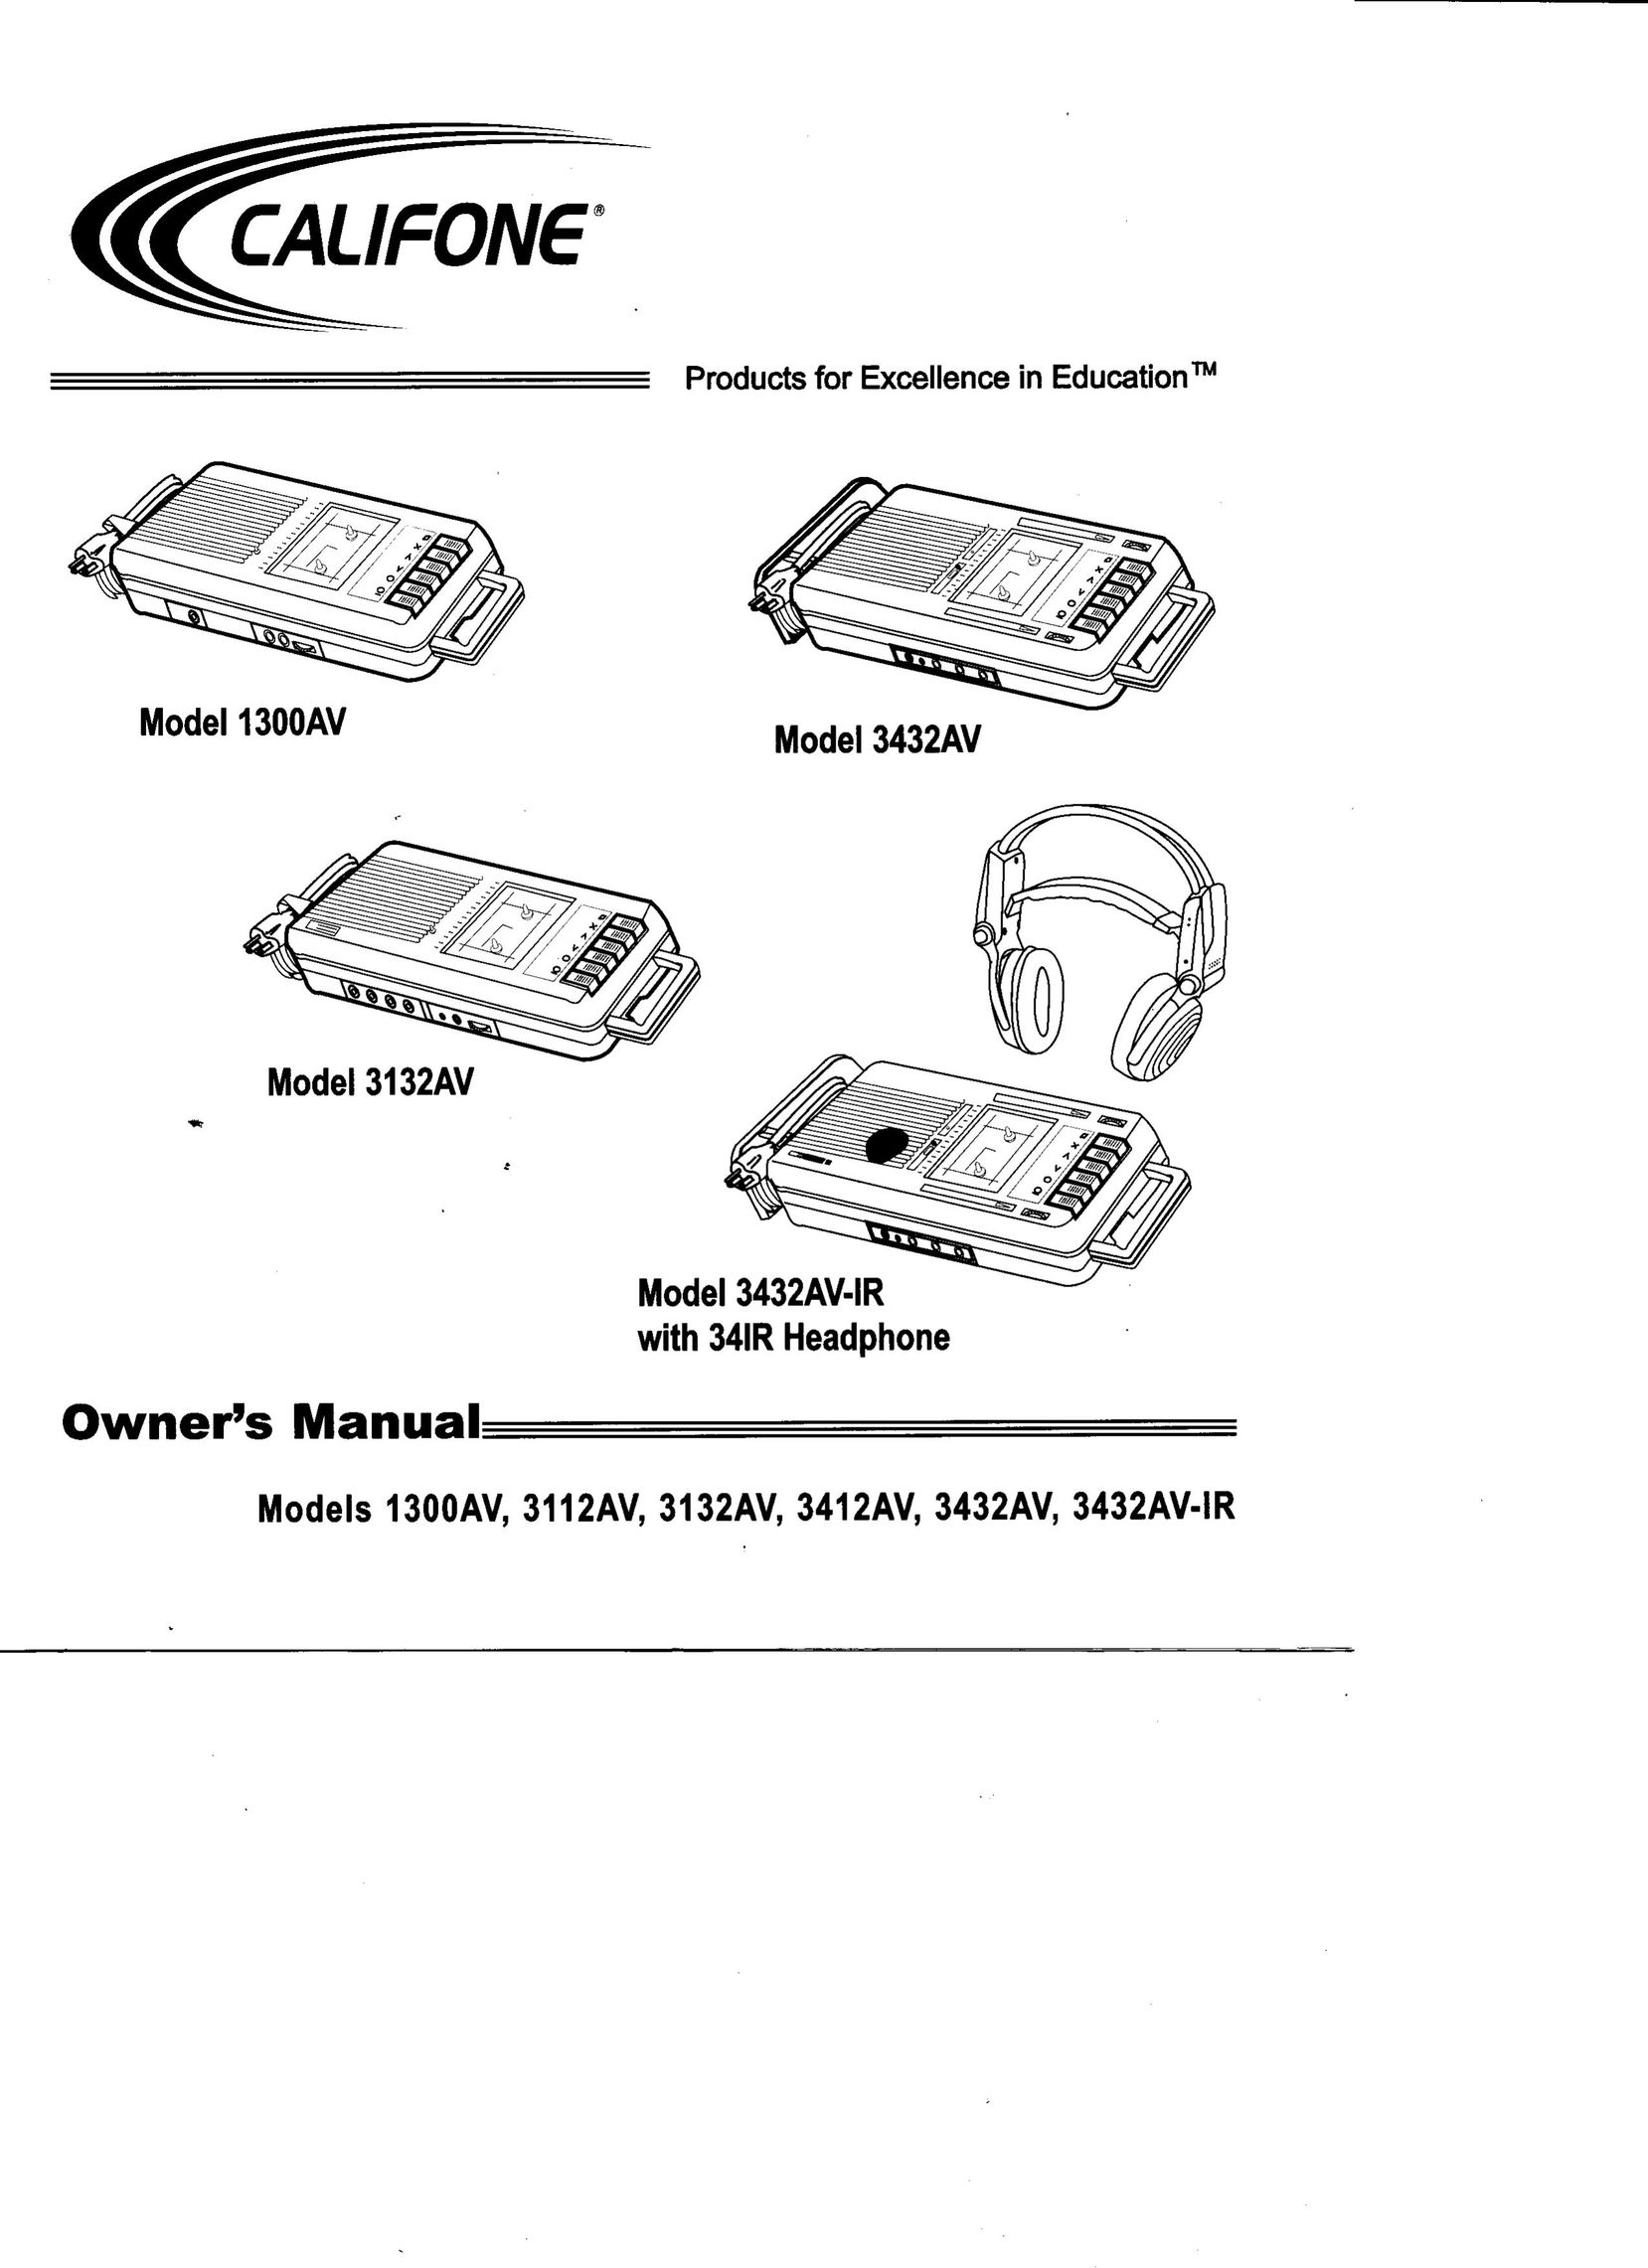 Califone 3412AV Cassette Player User Manual